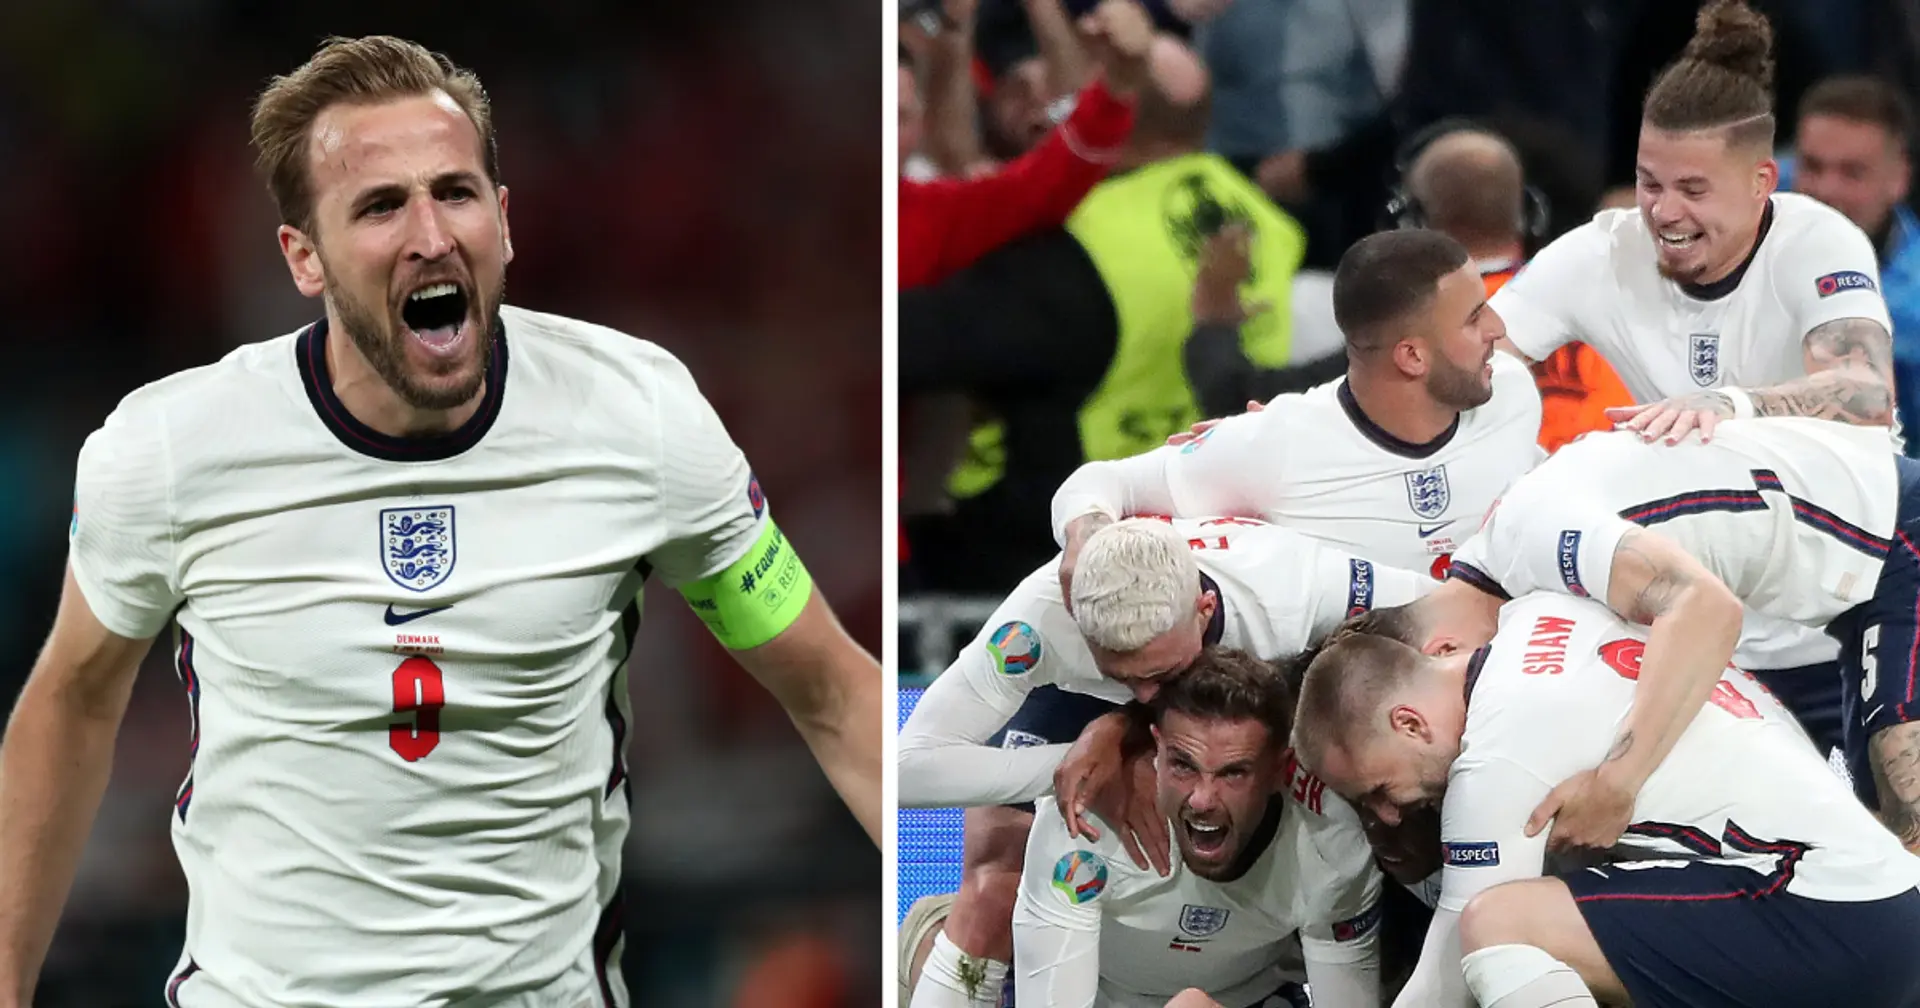 England reach Euro 2020 final with win over Denmark